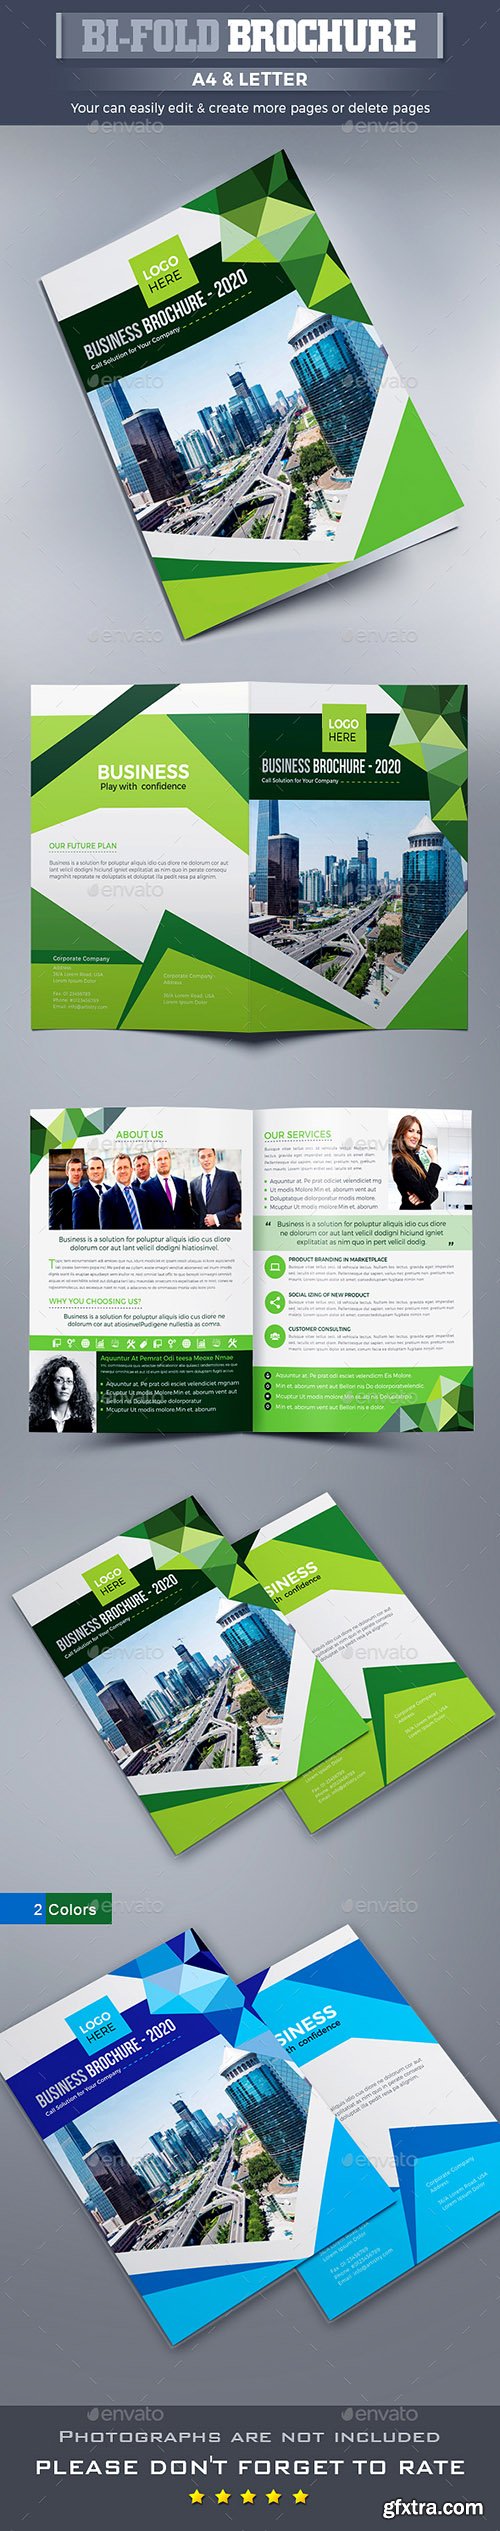 Corporate Bi-fold Brochure 22550011